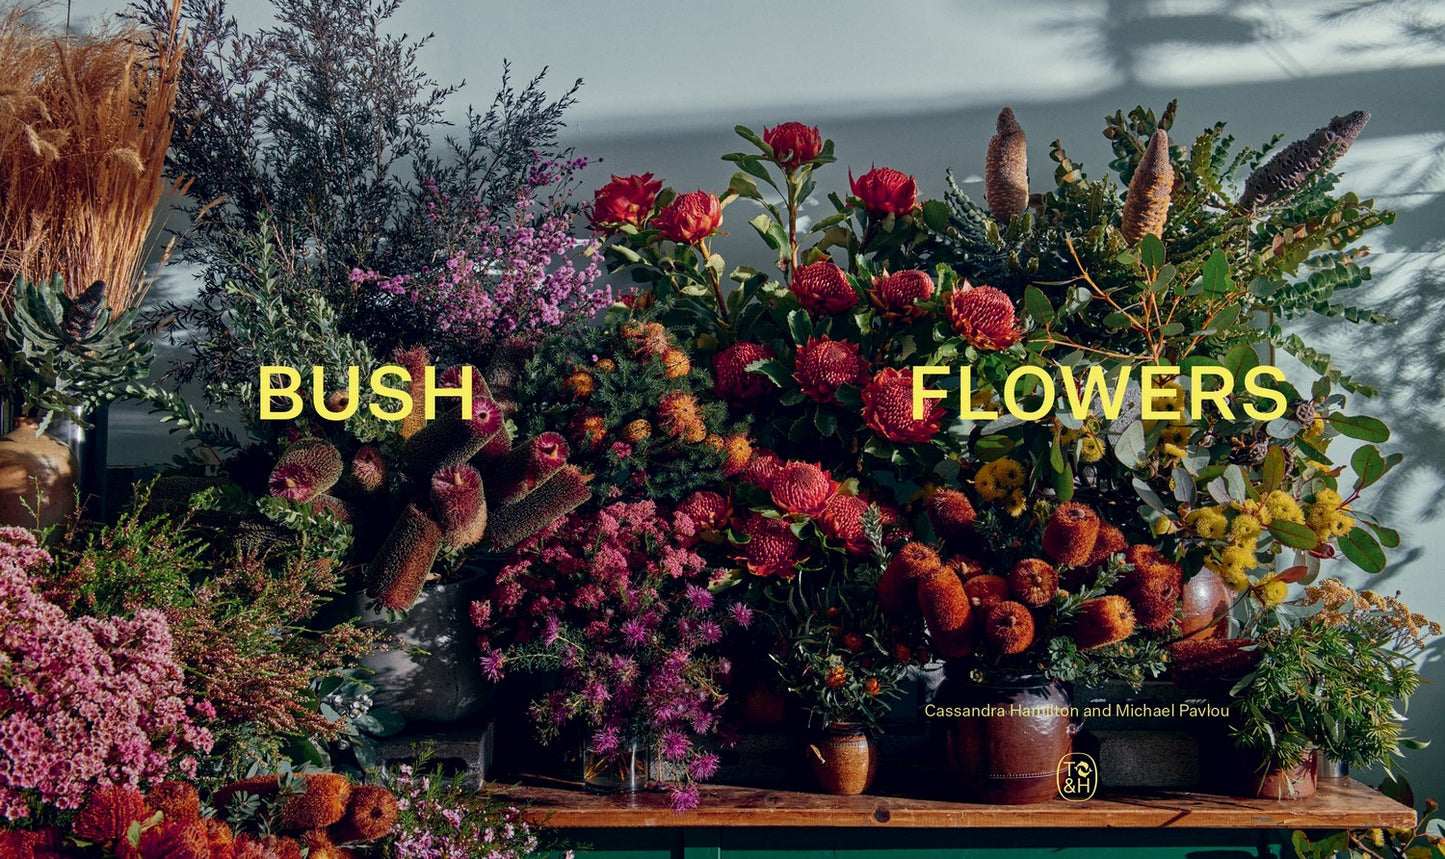 Bush Flowers: Australian Flowers